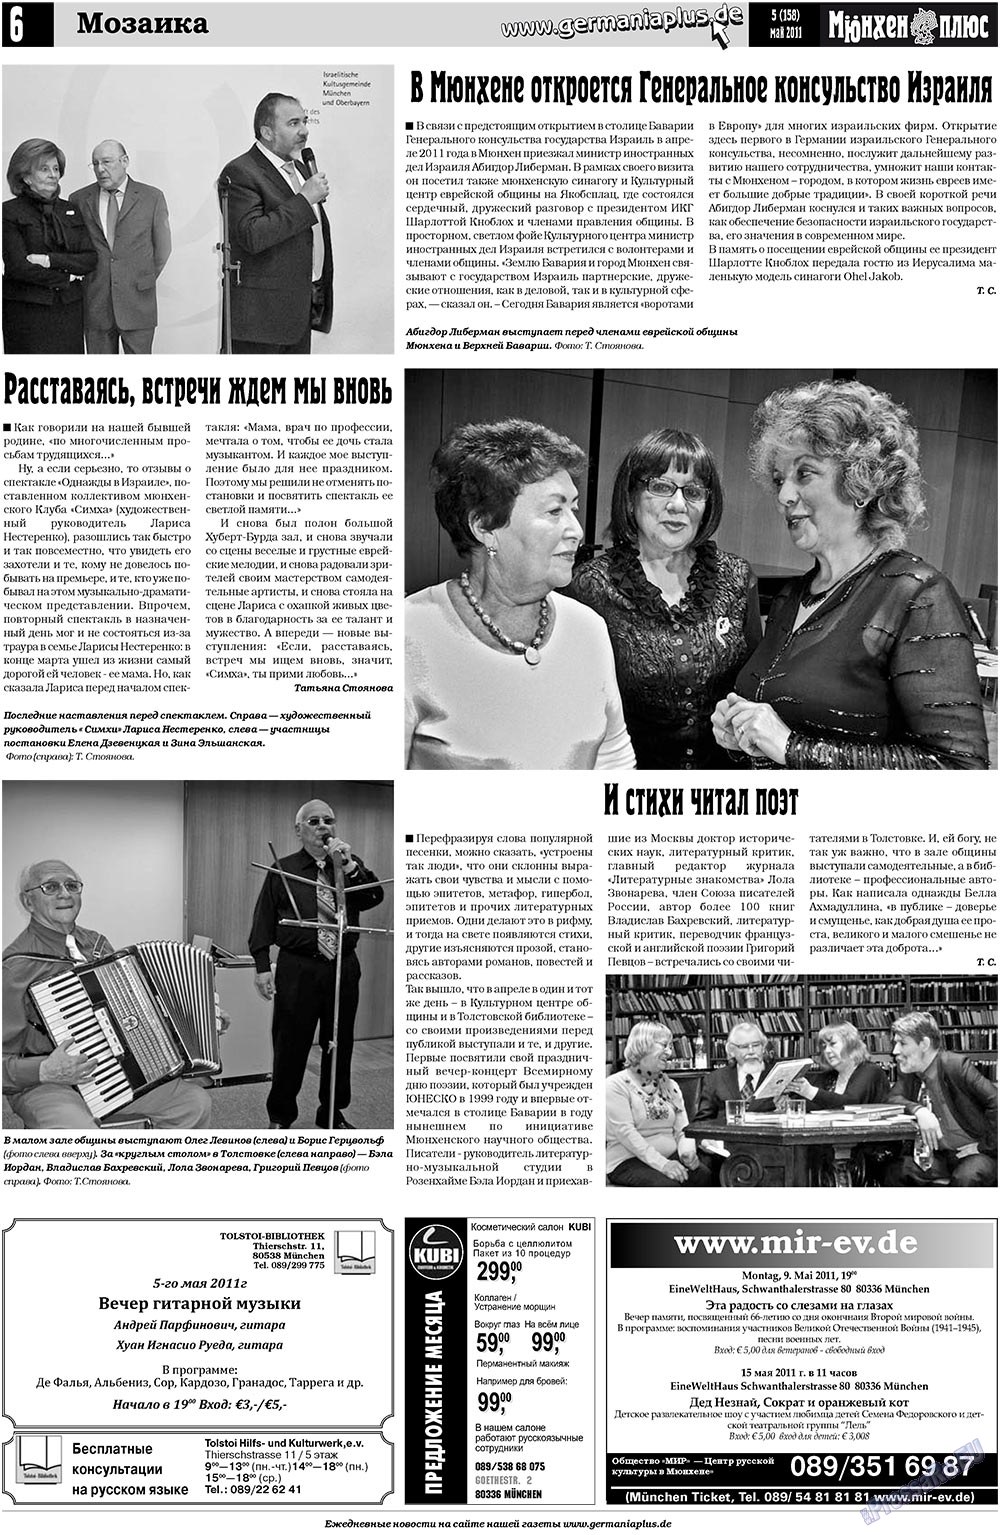 Германия плюс, газета. 2011 №5 стр.22